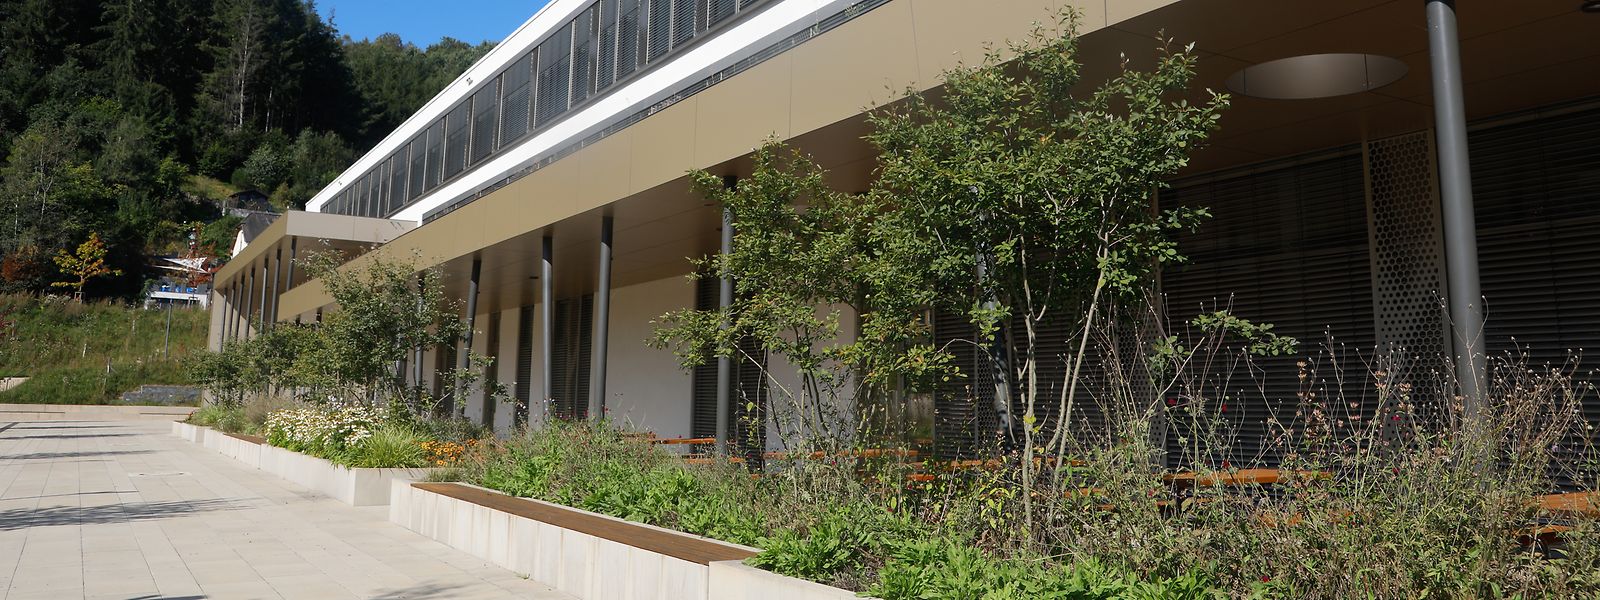 Das 2018 eingeweihte Lycée Edward Steichen soll bis 2026 einen Ausbau erhalten, die Arbeiten beginnen Anfang 2023. Von zunächst rund 180 ist die Schülerzahl auf mittlerweile 720 gestiegen.